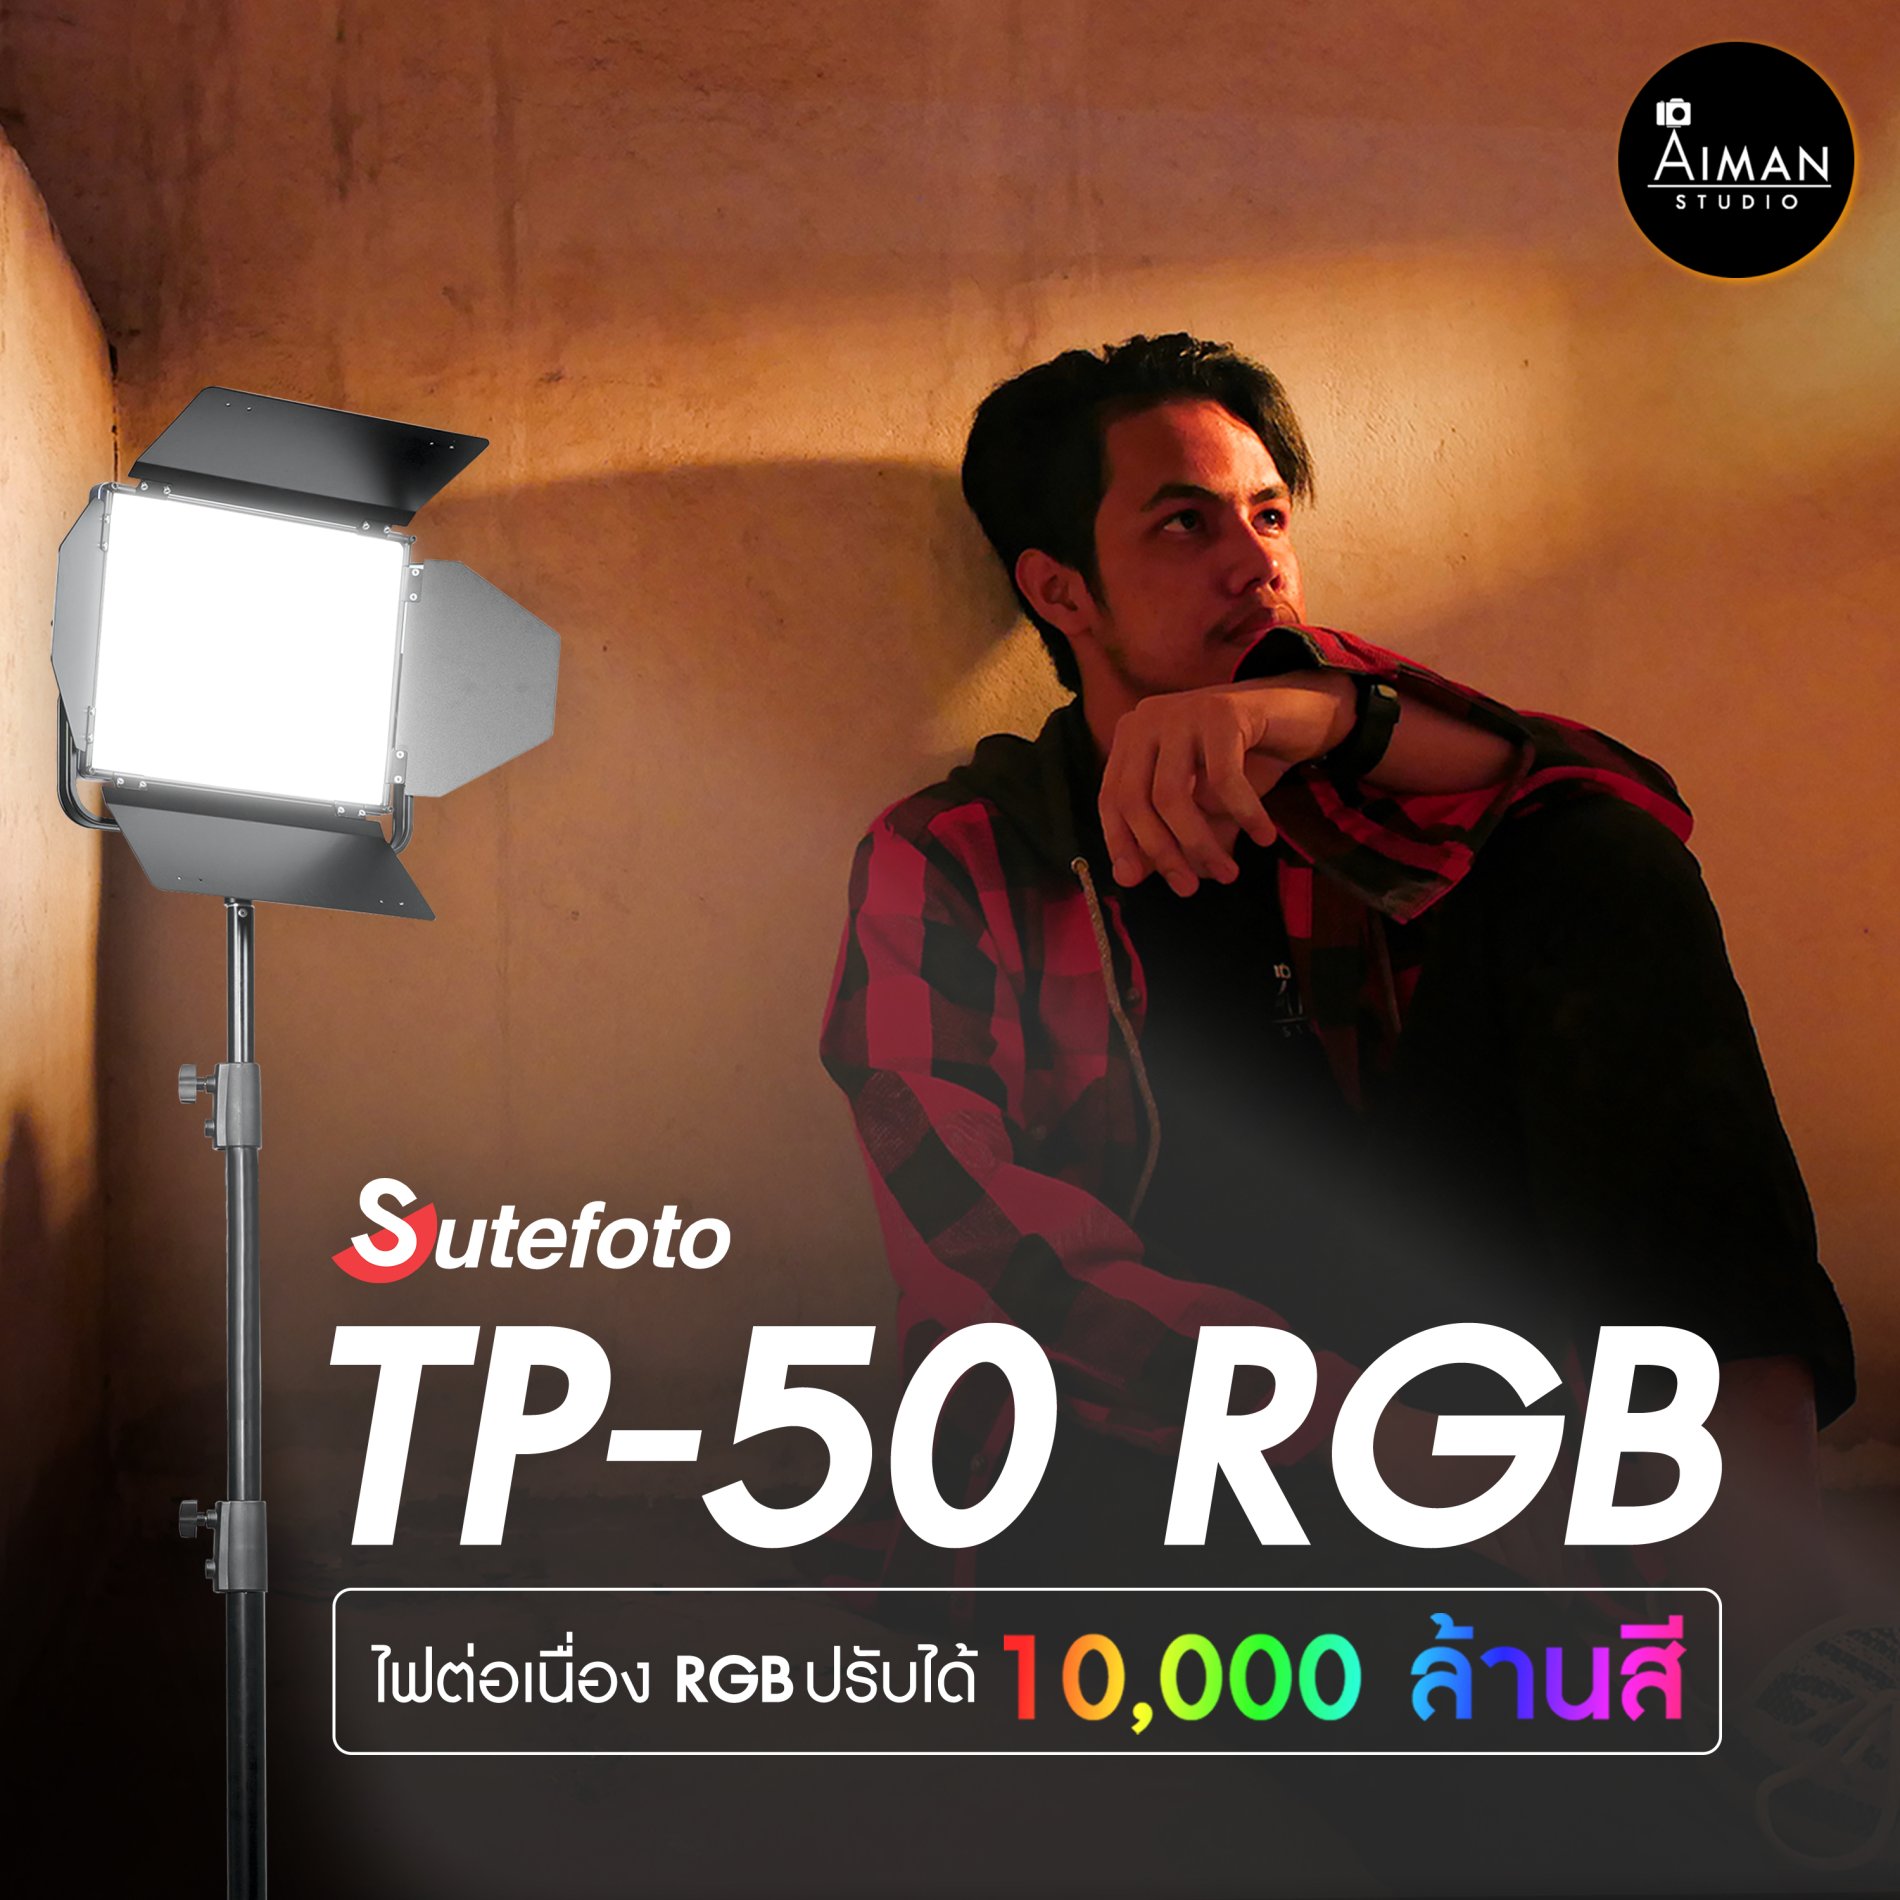 Sutefoto TP-50 RGB